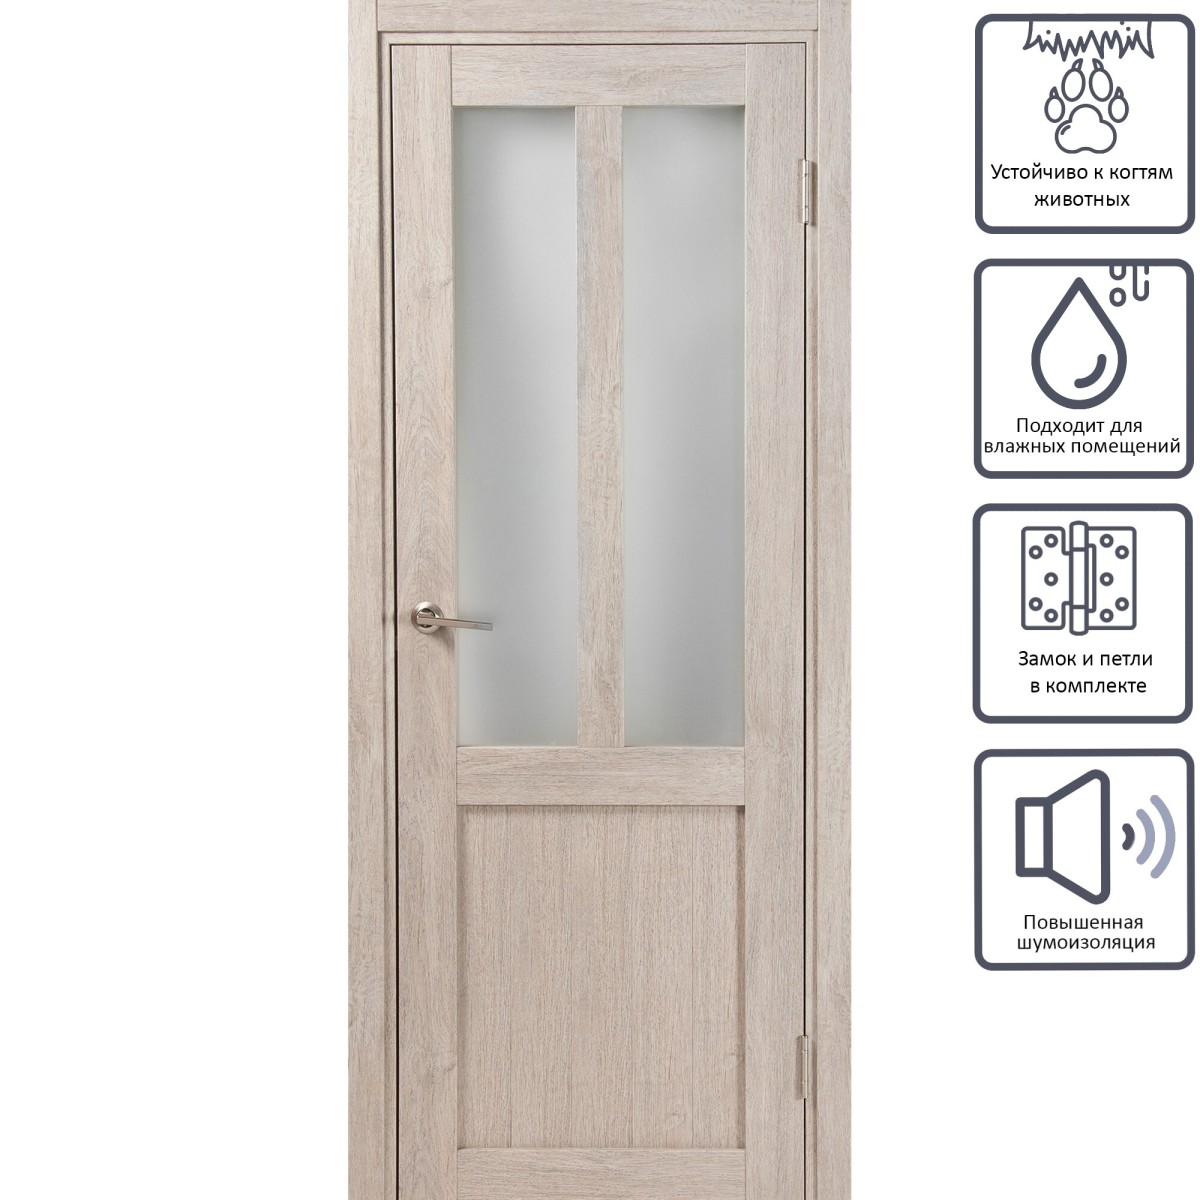 Дверь межкомнатная остеклённая Кантри 80x200 см, ПВХ, цвет дуб эссо, с фурнитурой